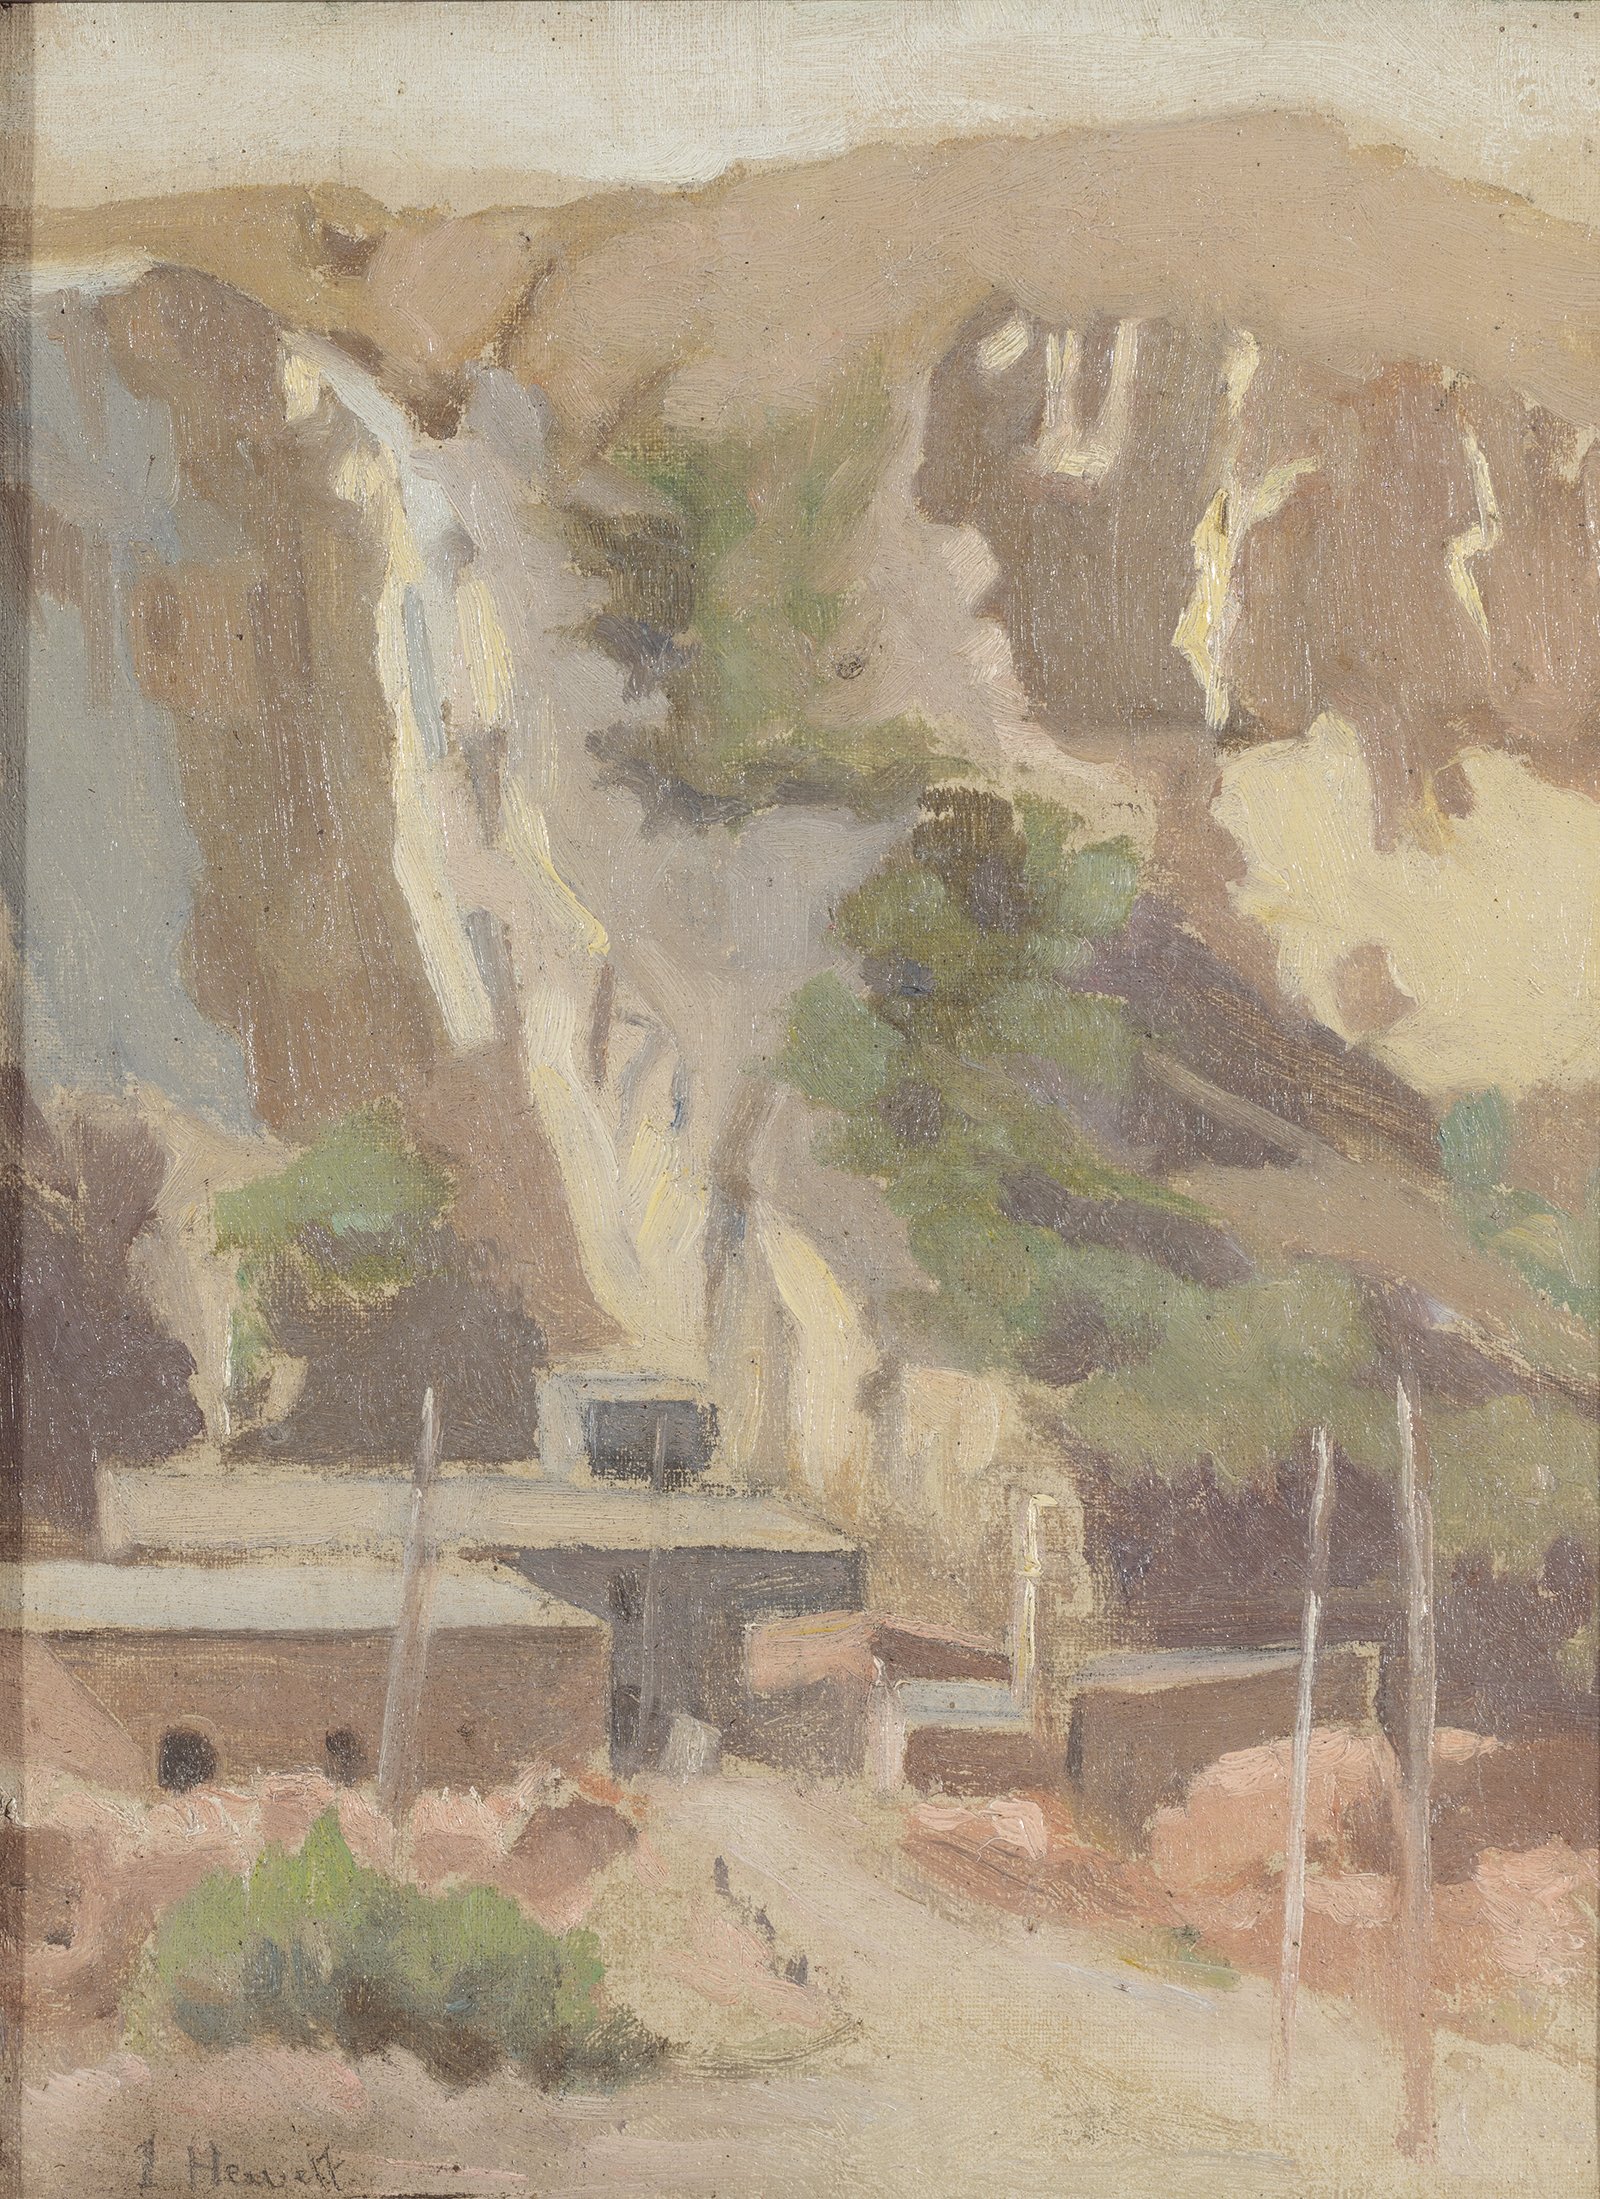  Irene Hewett,  Black Hill, Ballarat , c. 1930s, oil on canvas, 31 x 23.4cm; Art Gallery of Ballarat, gift of the artist, 1937 